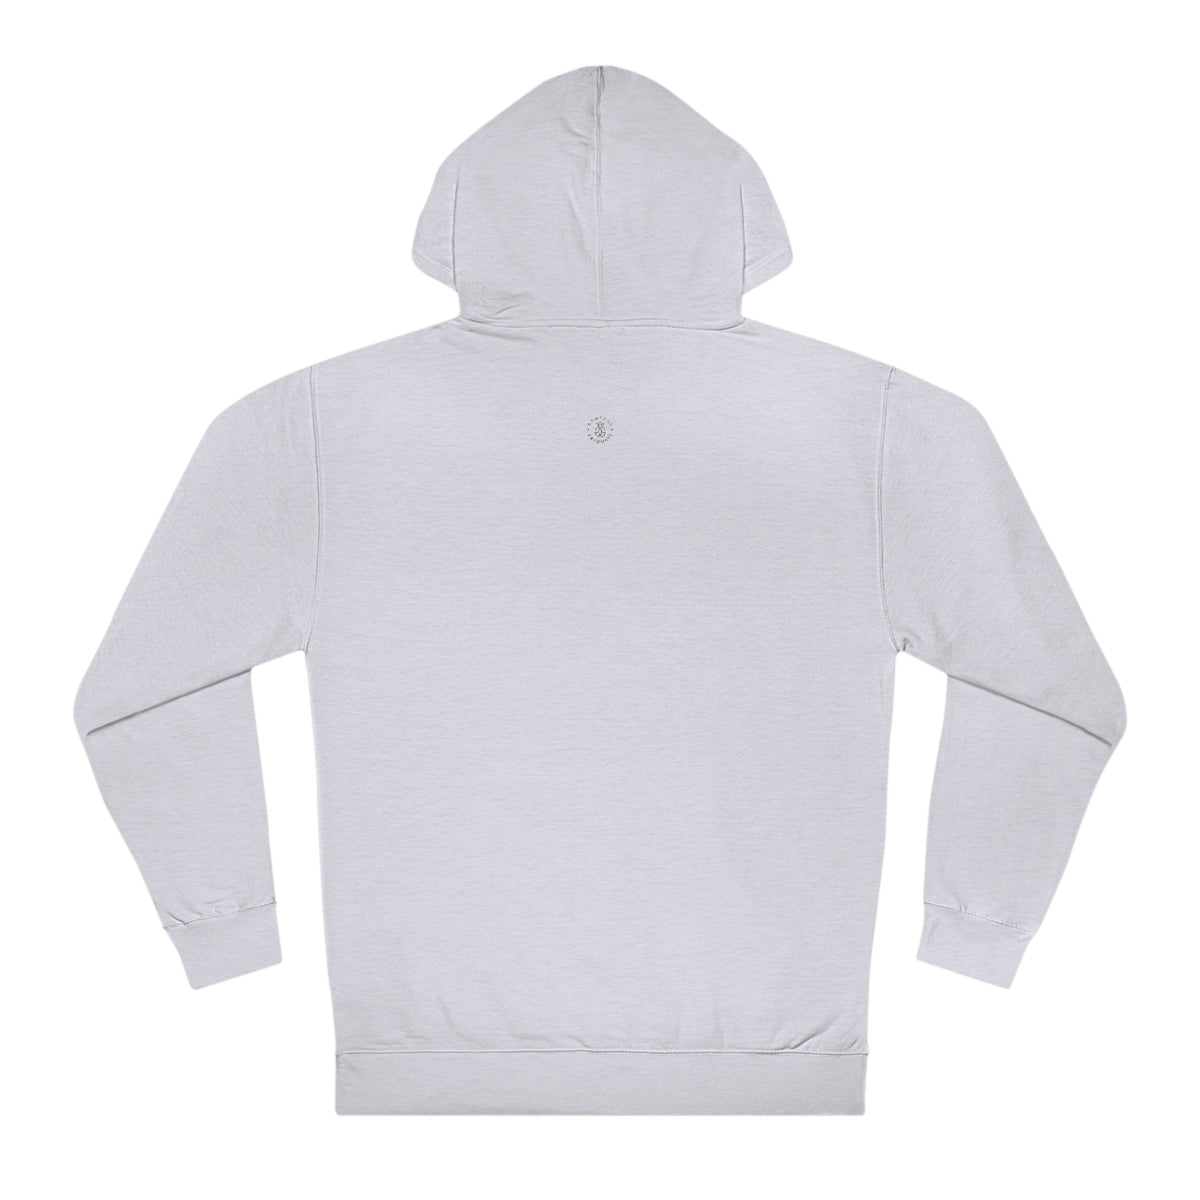 TCU Hooded Sweatshirt - GG - ITC